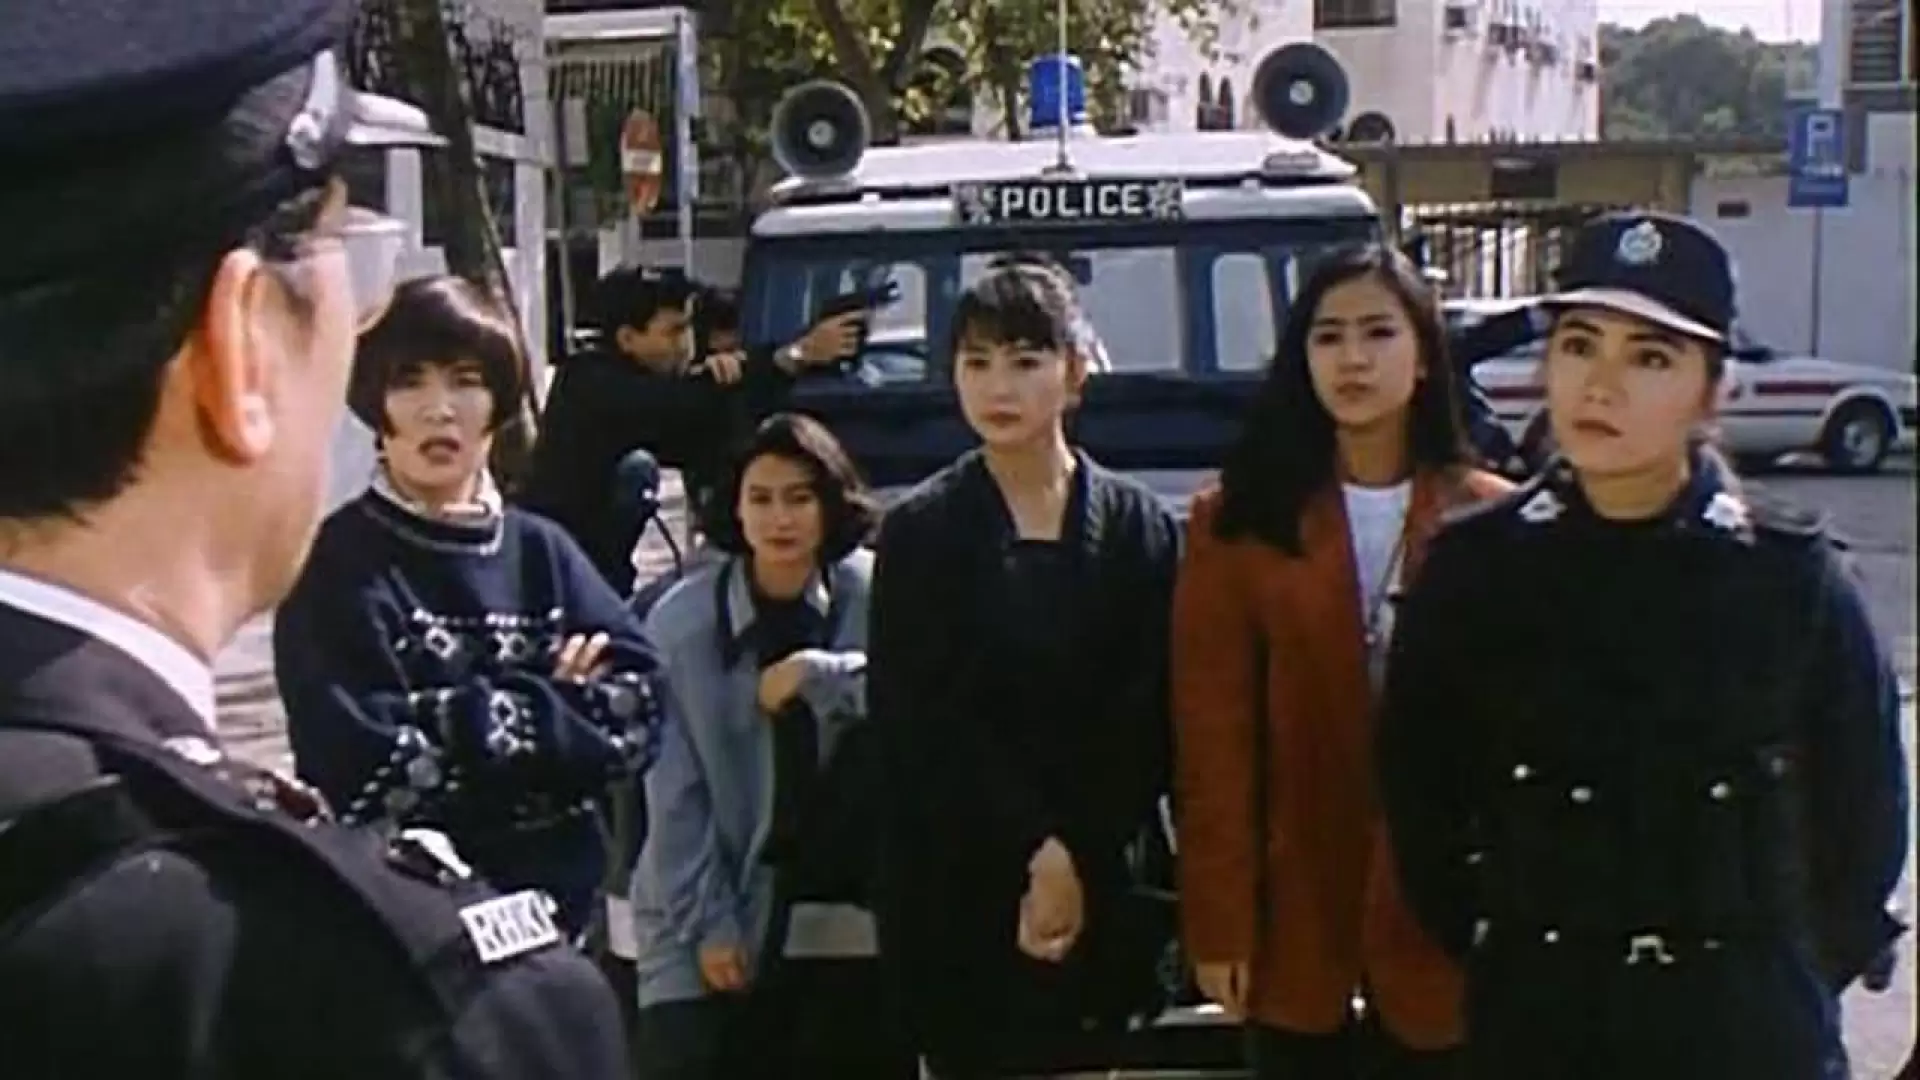 دانلود فیلم 92 Ba wang hua yu Ba wang hua 1992